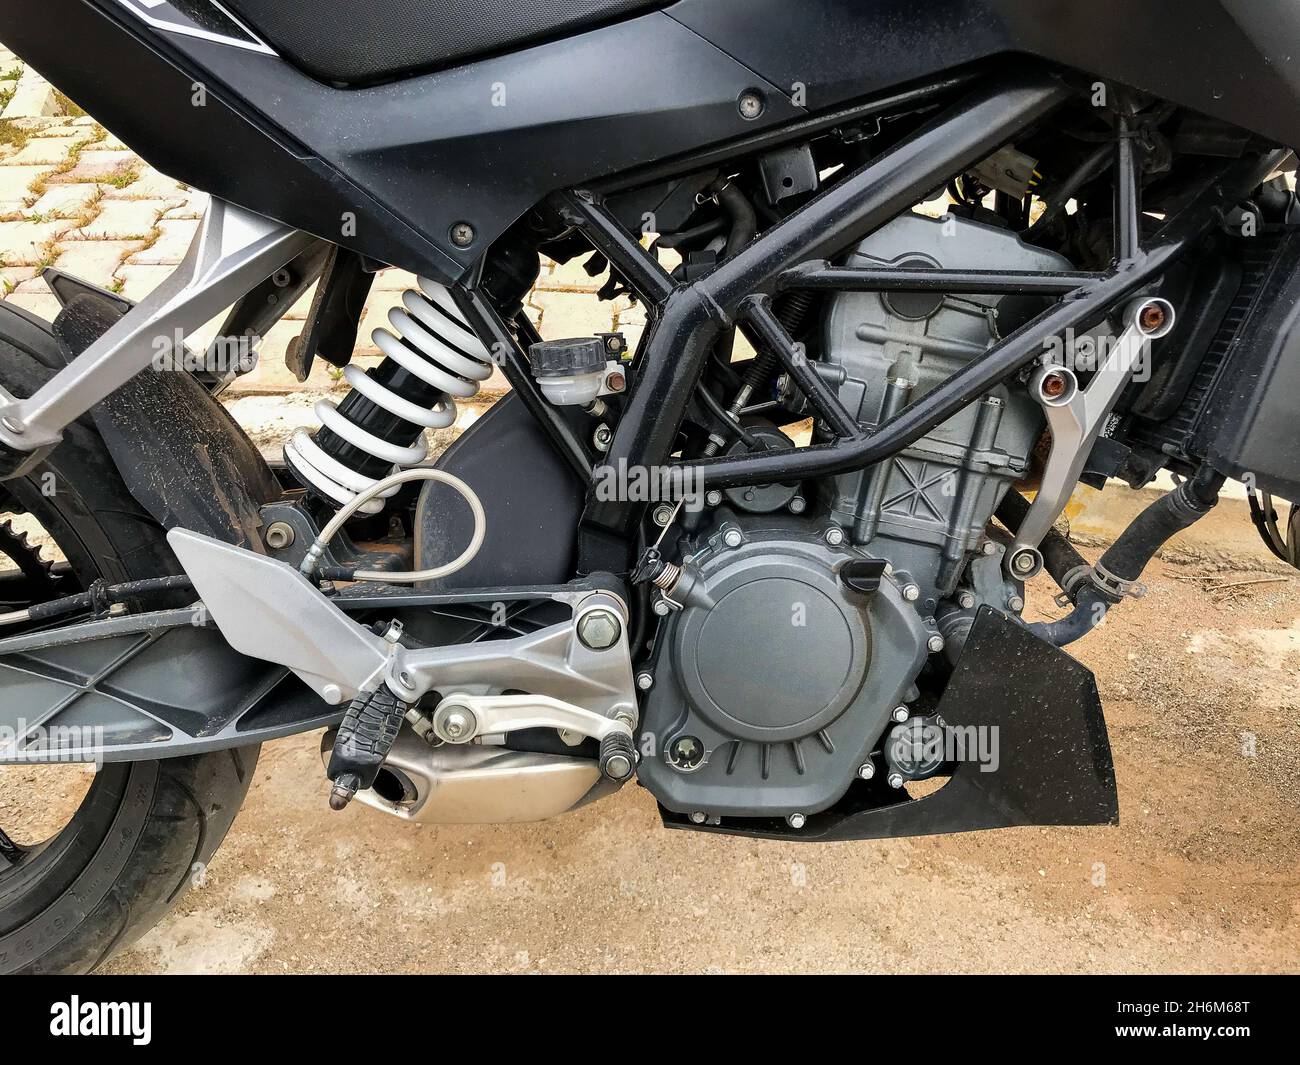 Motorrad-Motor verchromt und stark erscheinen Stockfotografie - Alamy